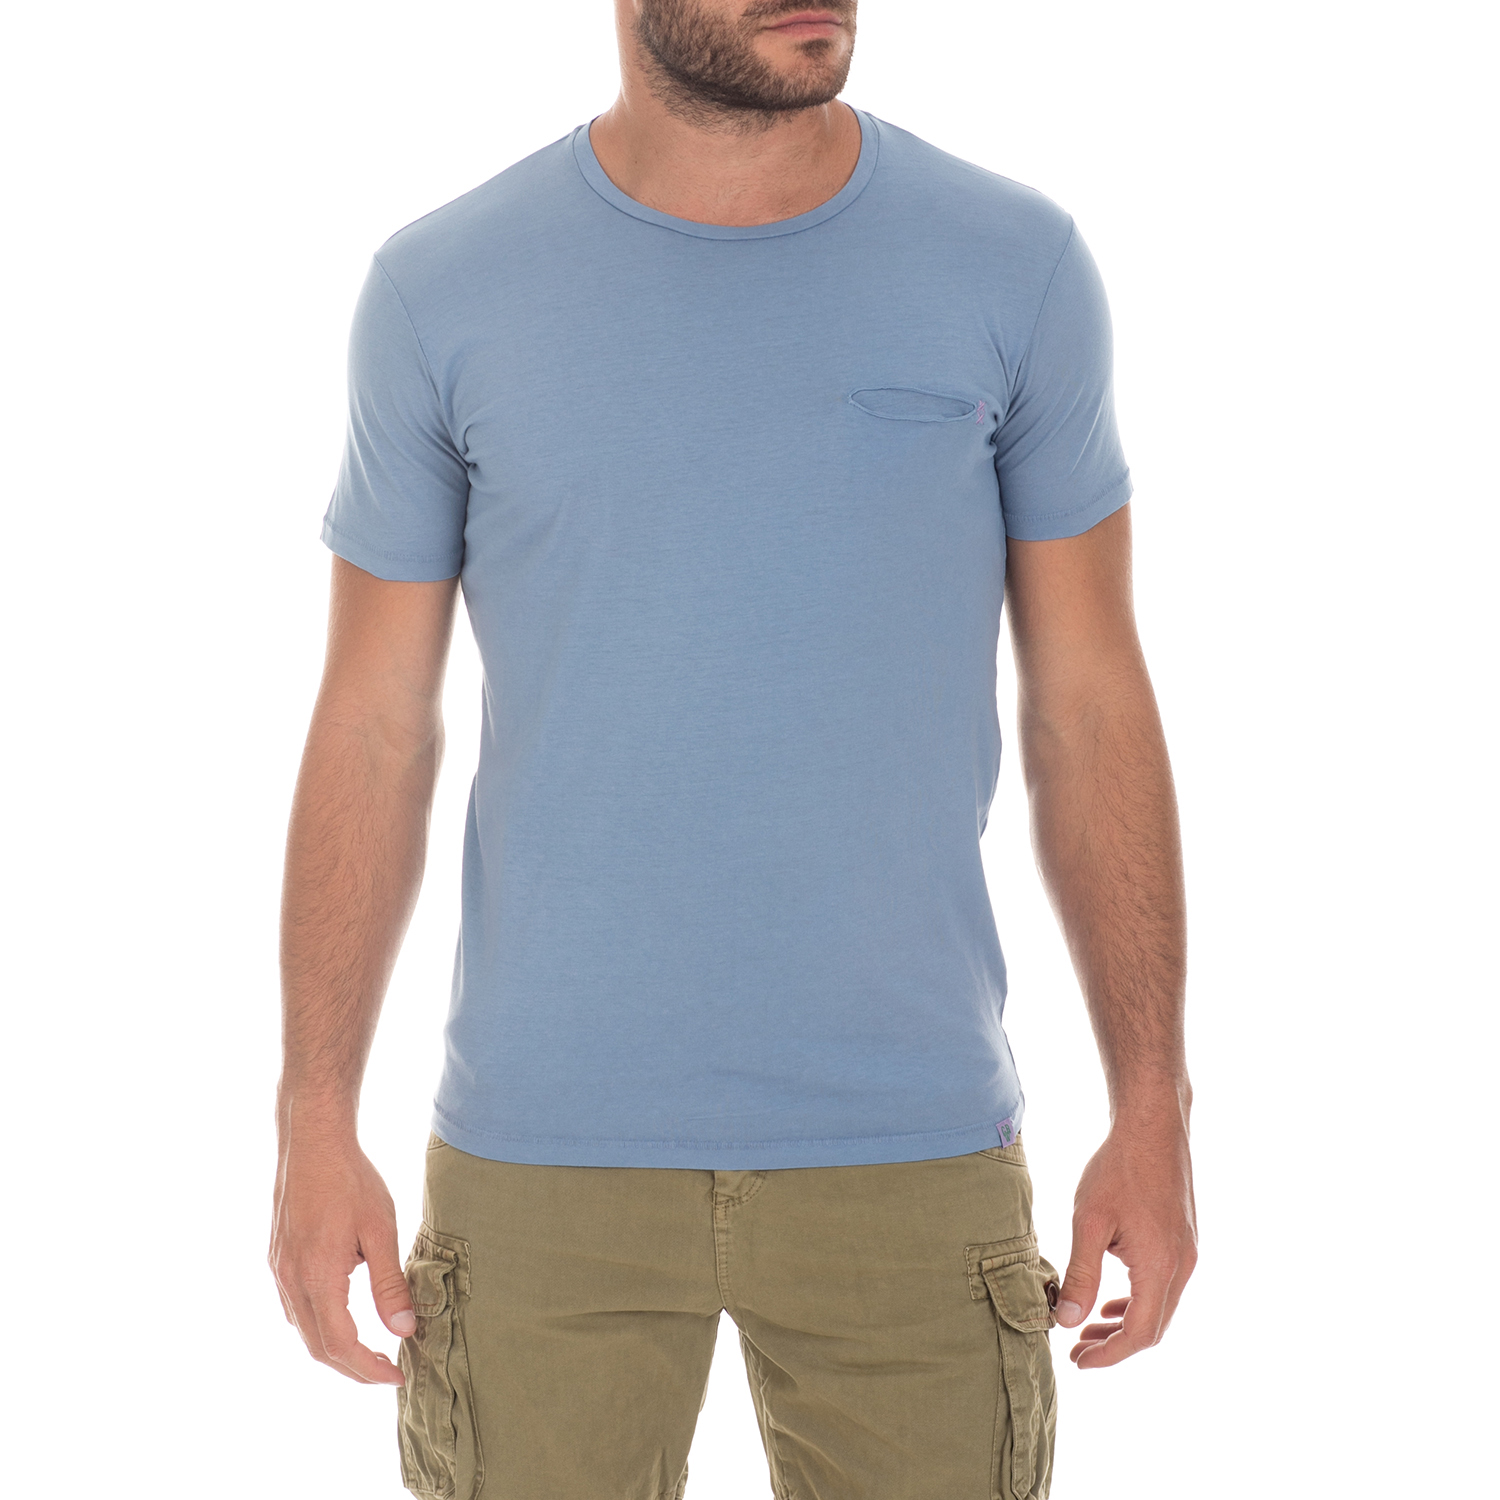 Ανδρικά/Ρούχα/Μπλούζες/Κοντομάνικες GREENWOOD - Ανδρική μπλούζα GREENWOOD μπλε